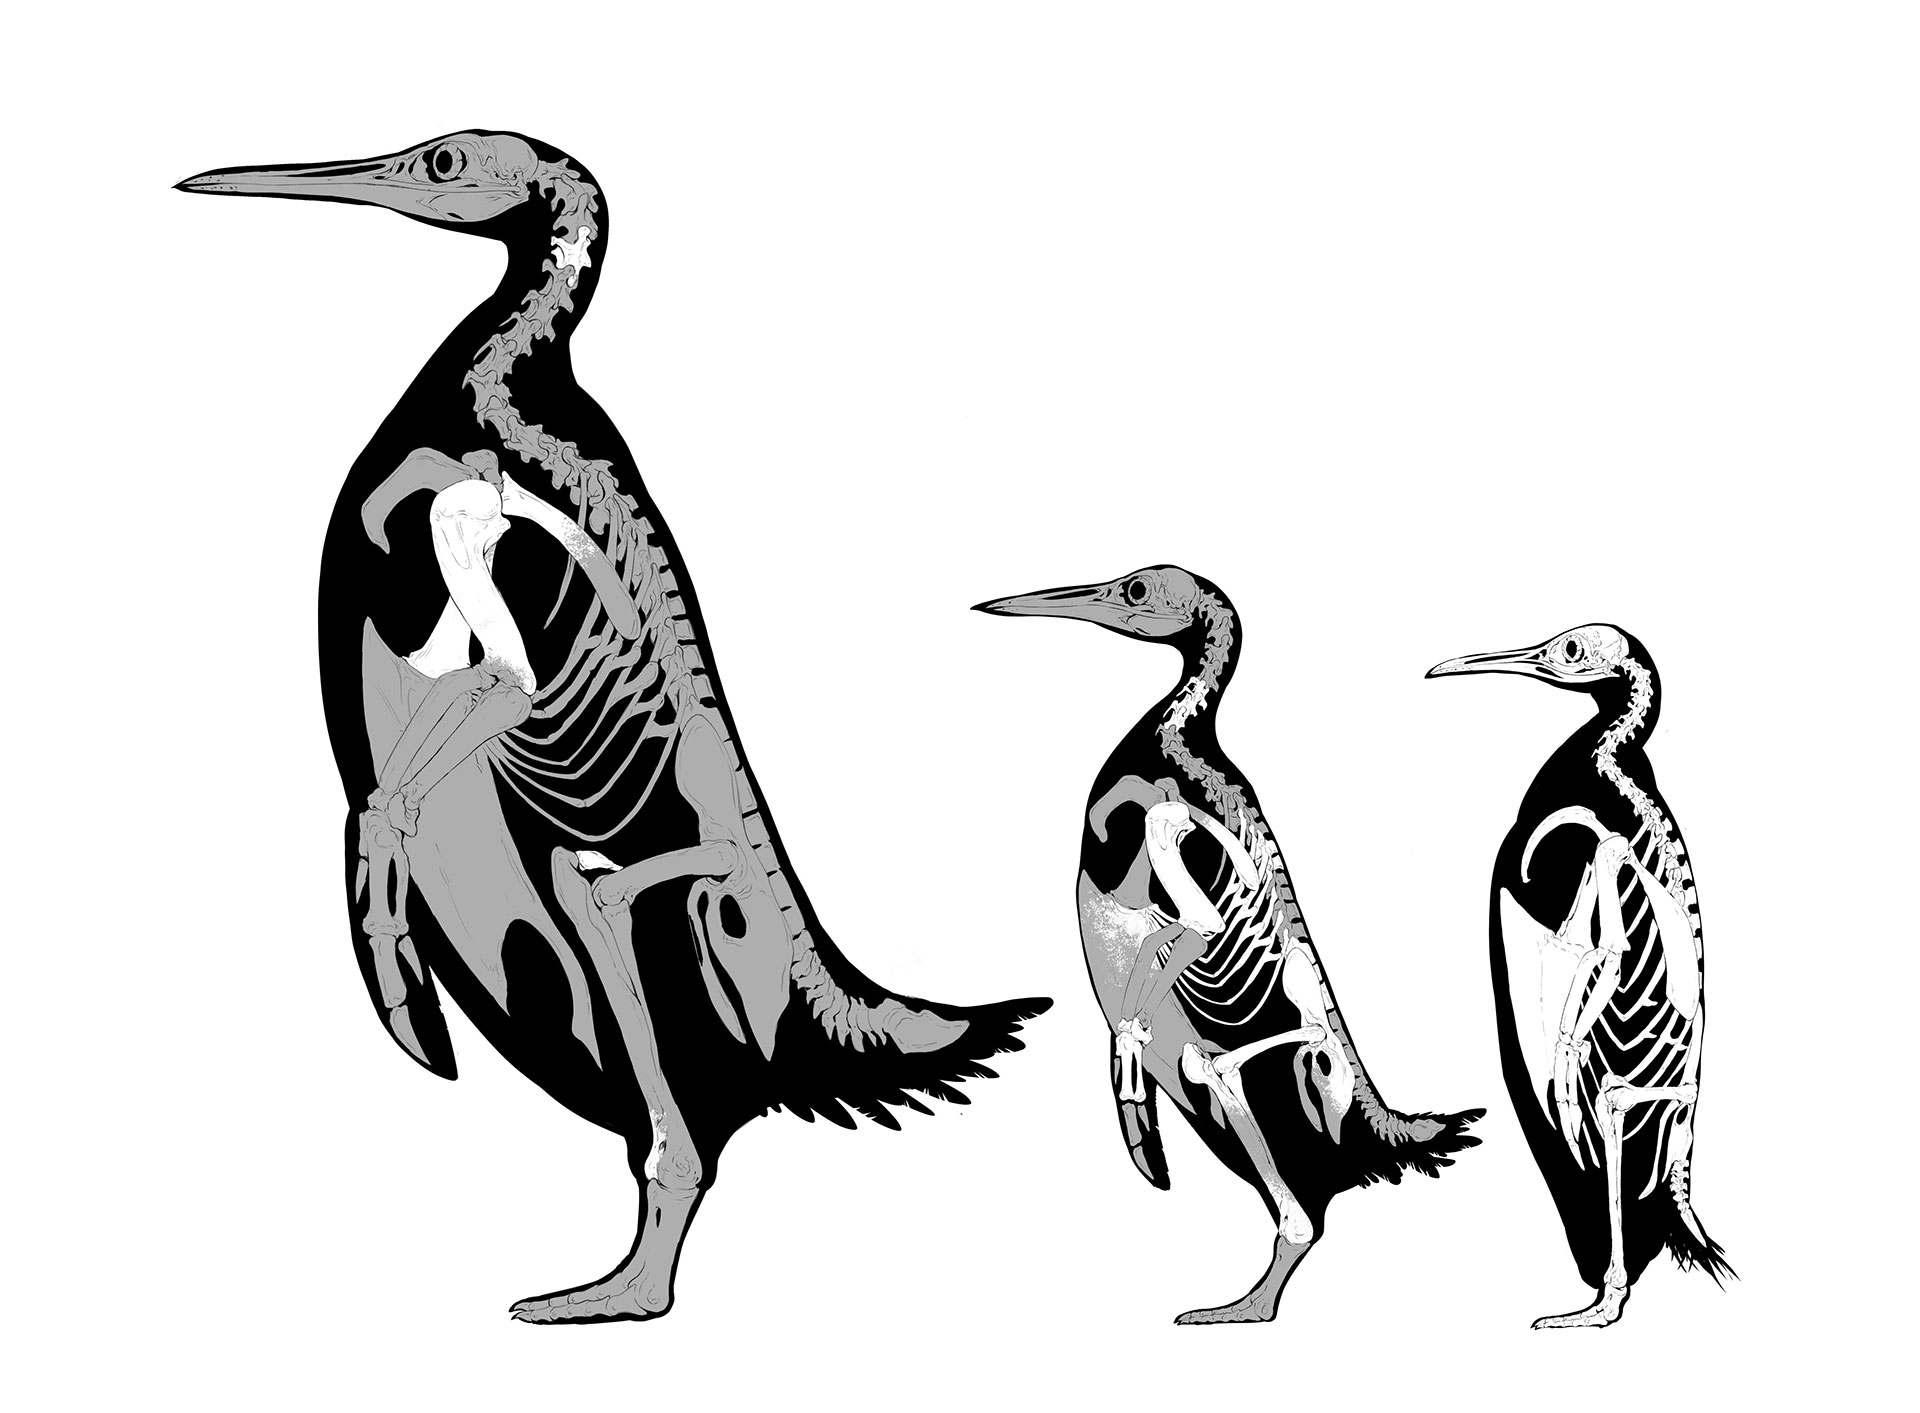 Kumimanu fordycei tiene tres veces el tamaño de los pingüinos que existen hoy en día (Simone Giovanardi)